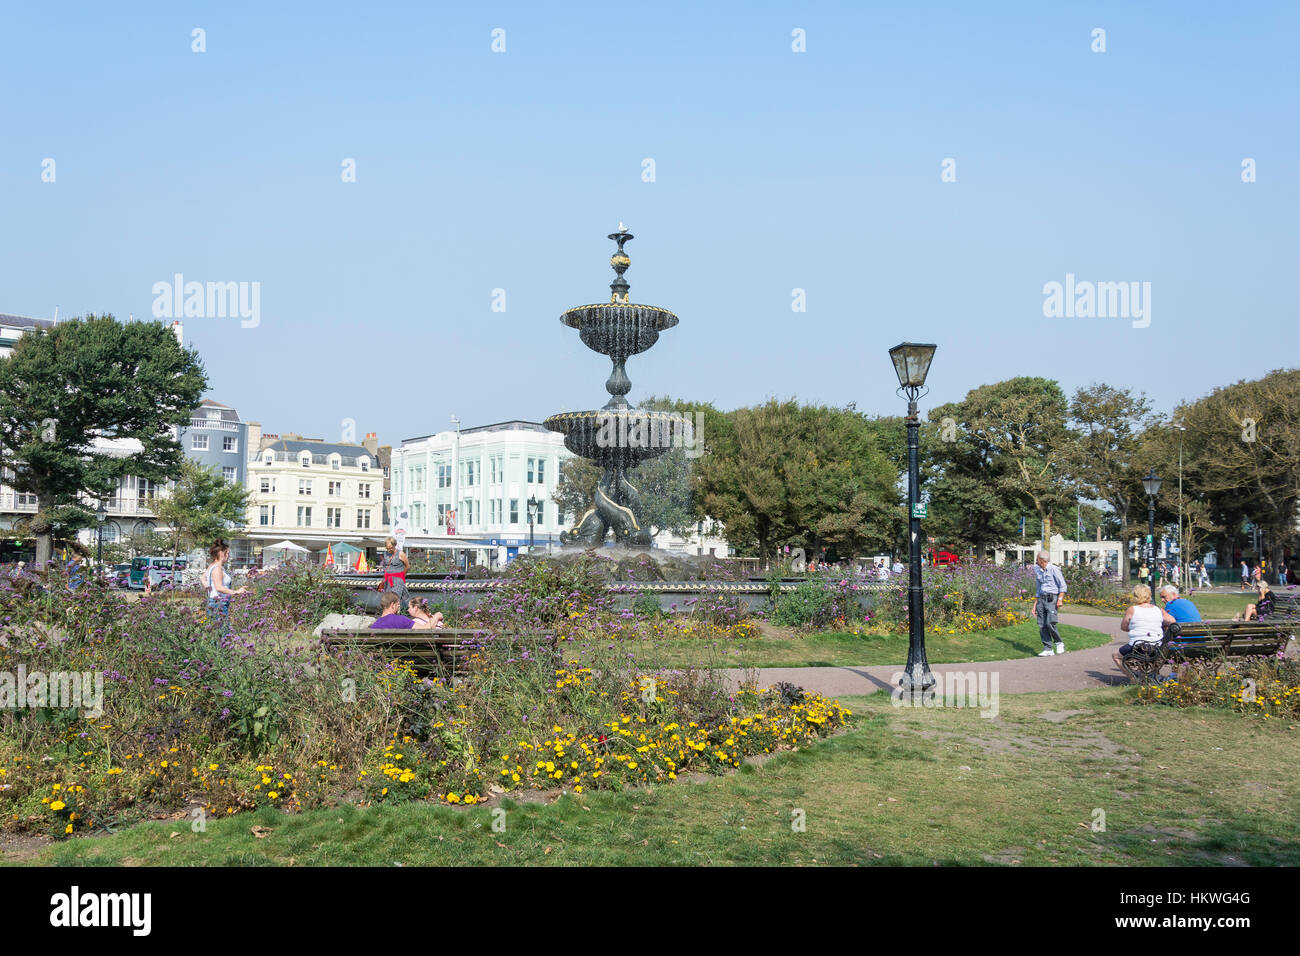 Victoria Fountain in Old Steine Gardens, Old Steine, Brighton, East Sussex, England, United Kingdom Stock Photo